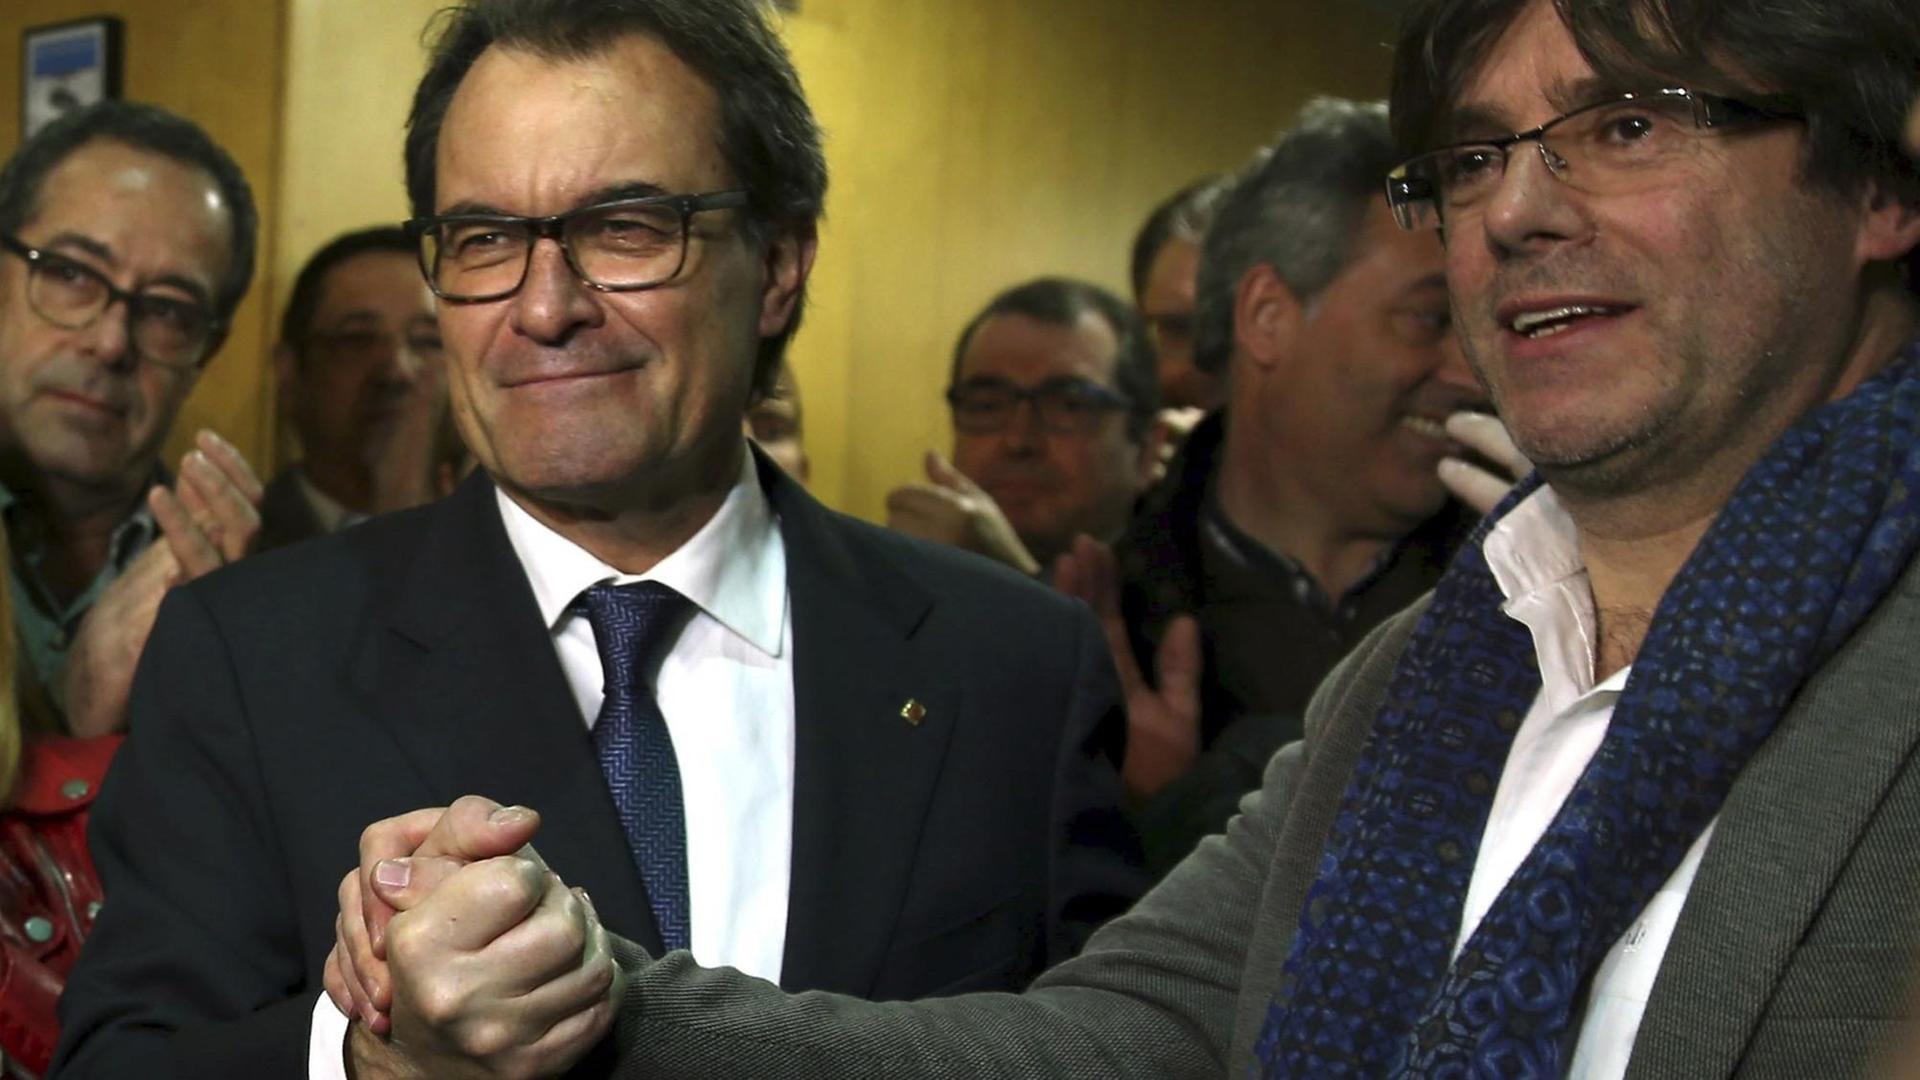 Kataloniens scheidender Ministerpräsident Artur Mas und sein designierter Nachfolger Carles Puigdemont geben sich die Hand.